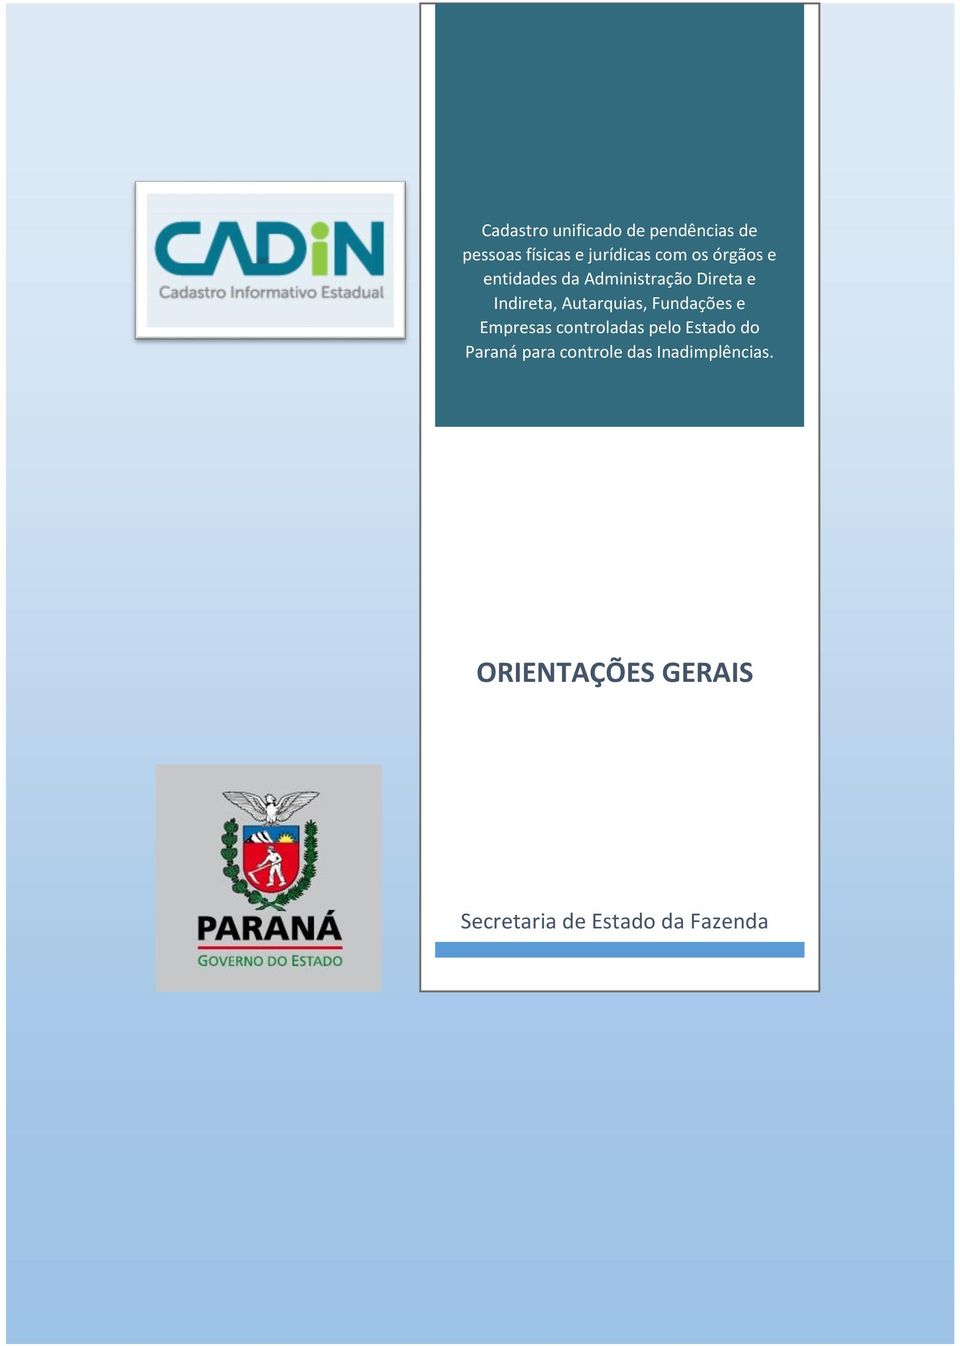 Fundações e Empresas controladas pelo Estado do Paraná para controle